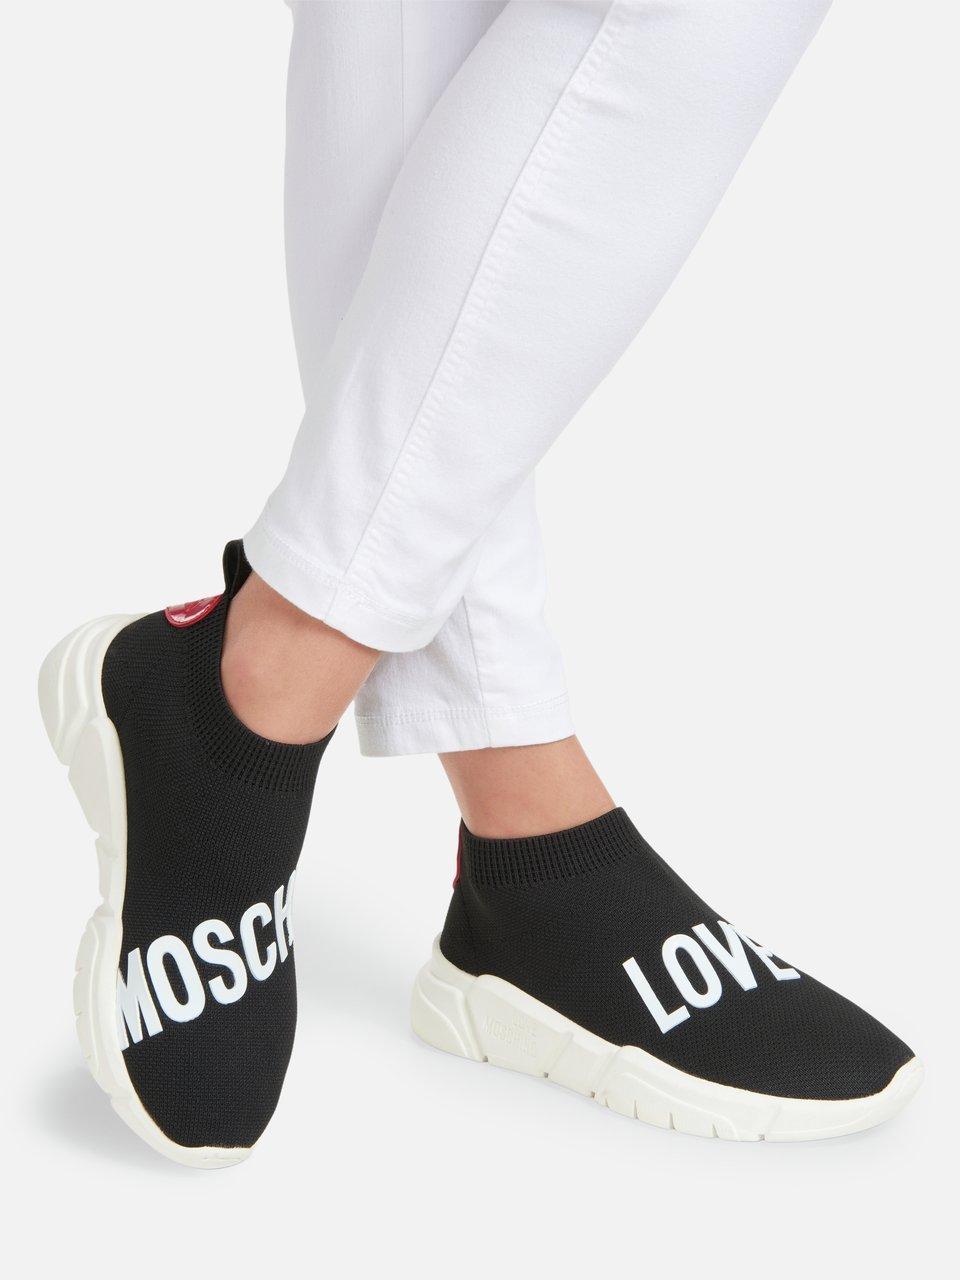 functie Het strand Ongelijkheid Love Moschino - Sneakers - zwart/wit